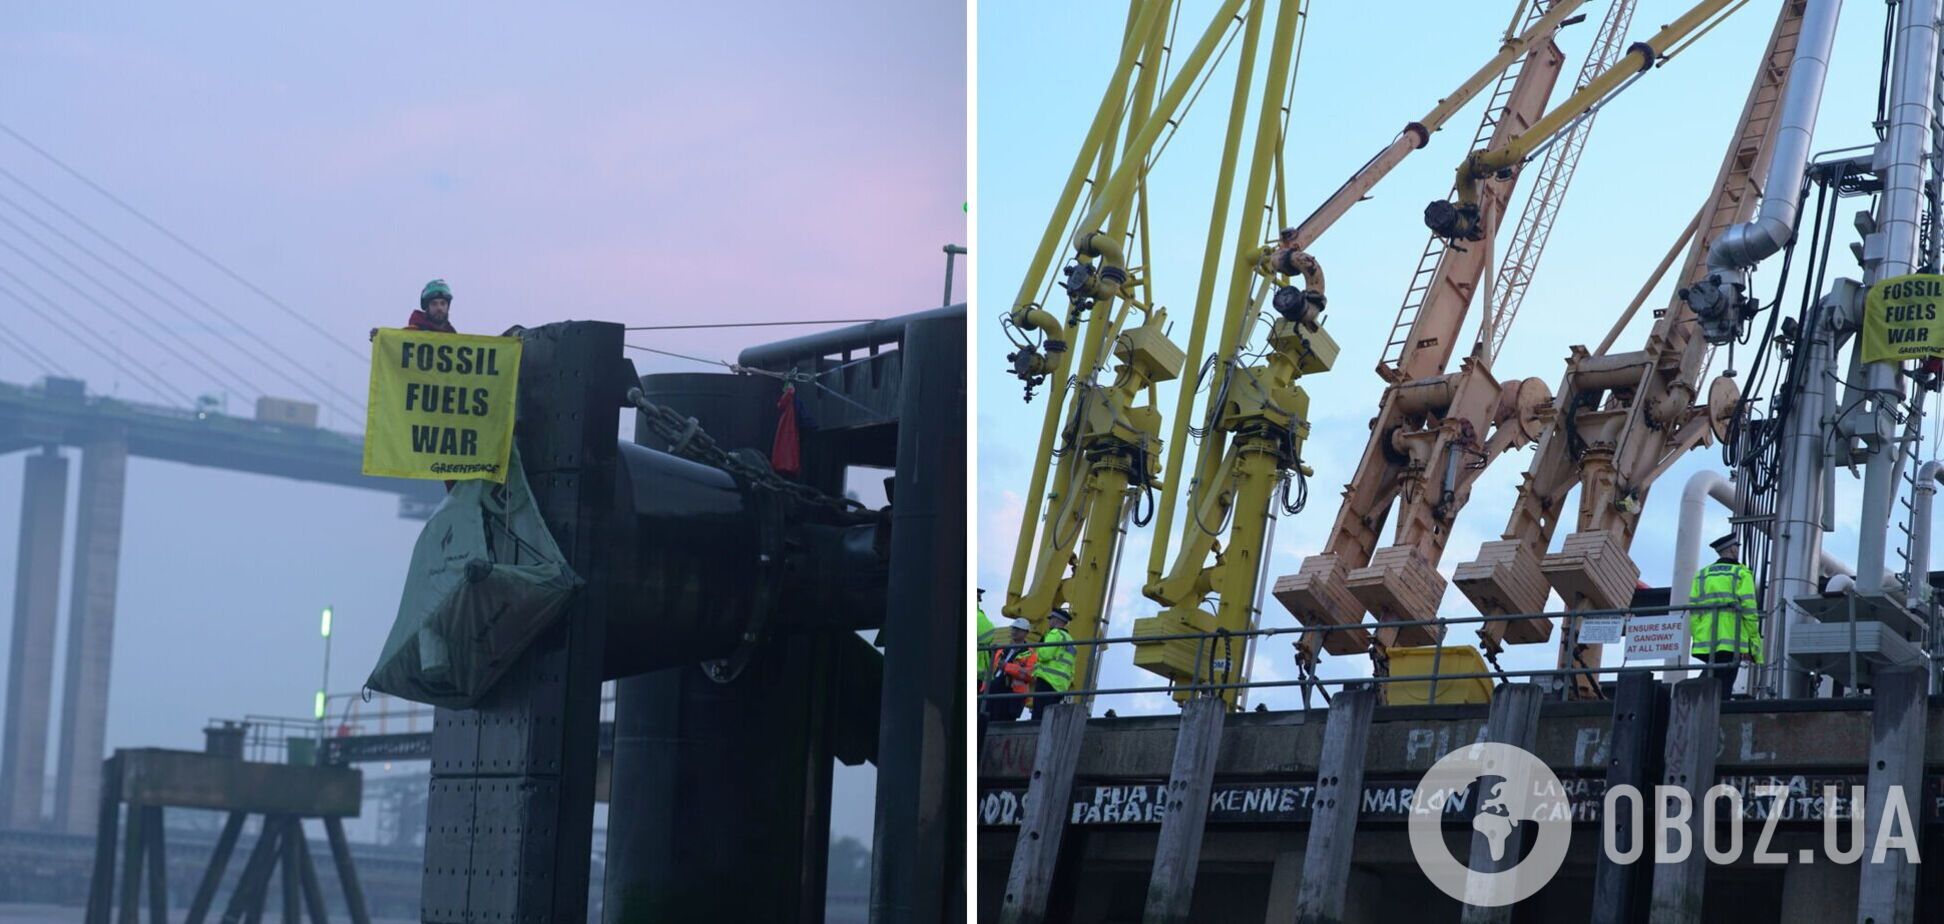 Активісти Greenpeace не пустили в британський порт грецький танкер із російським паливом – Reuters